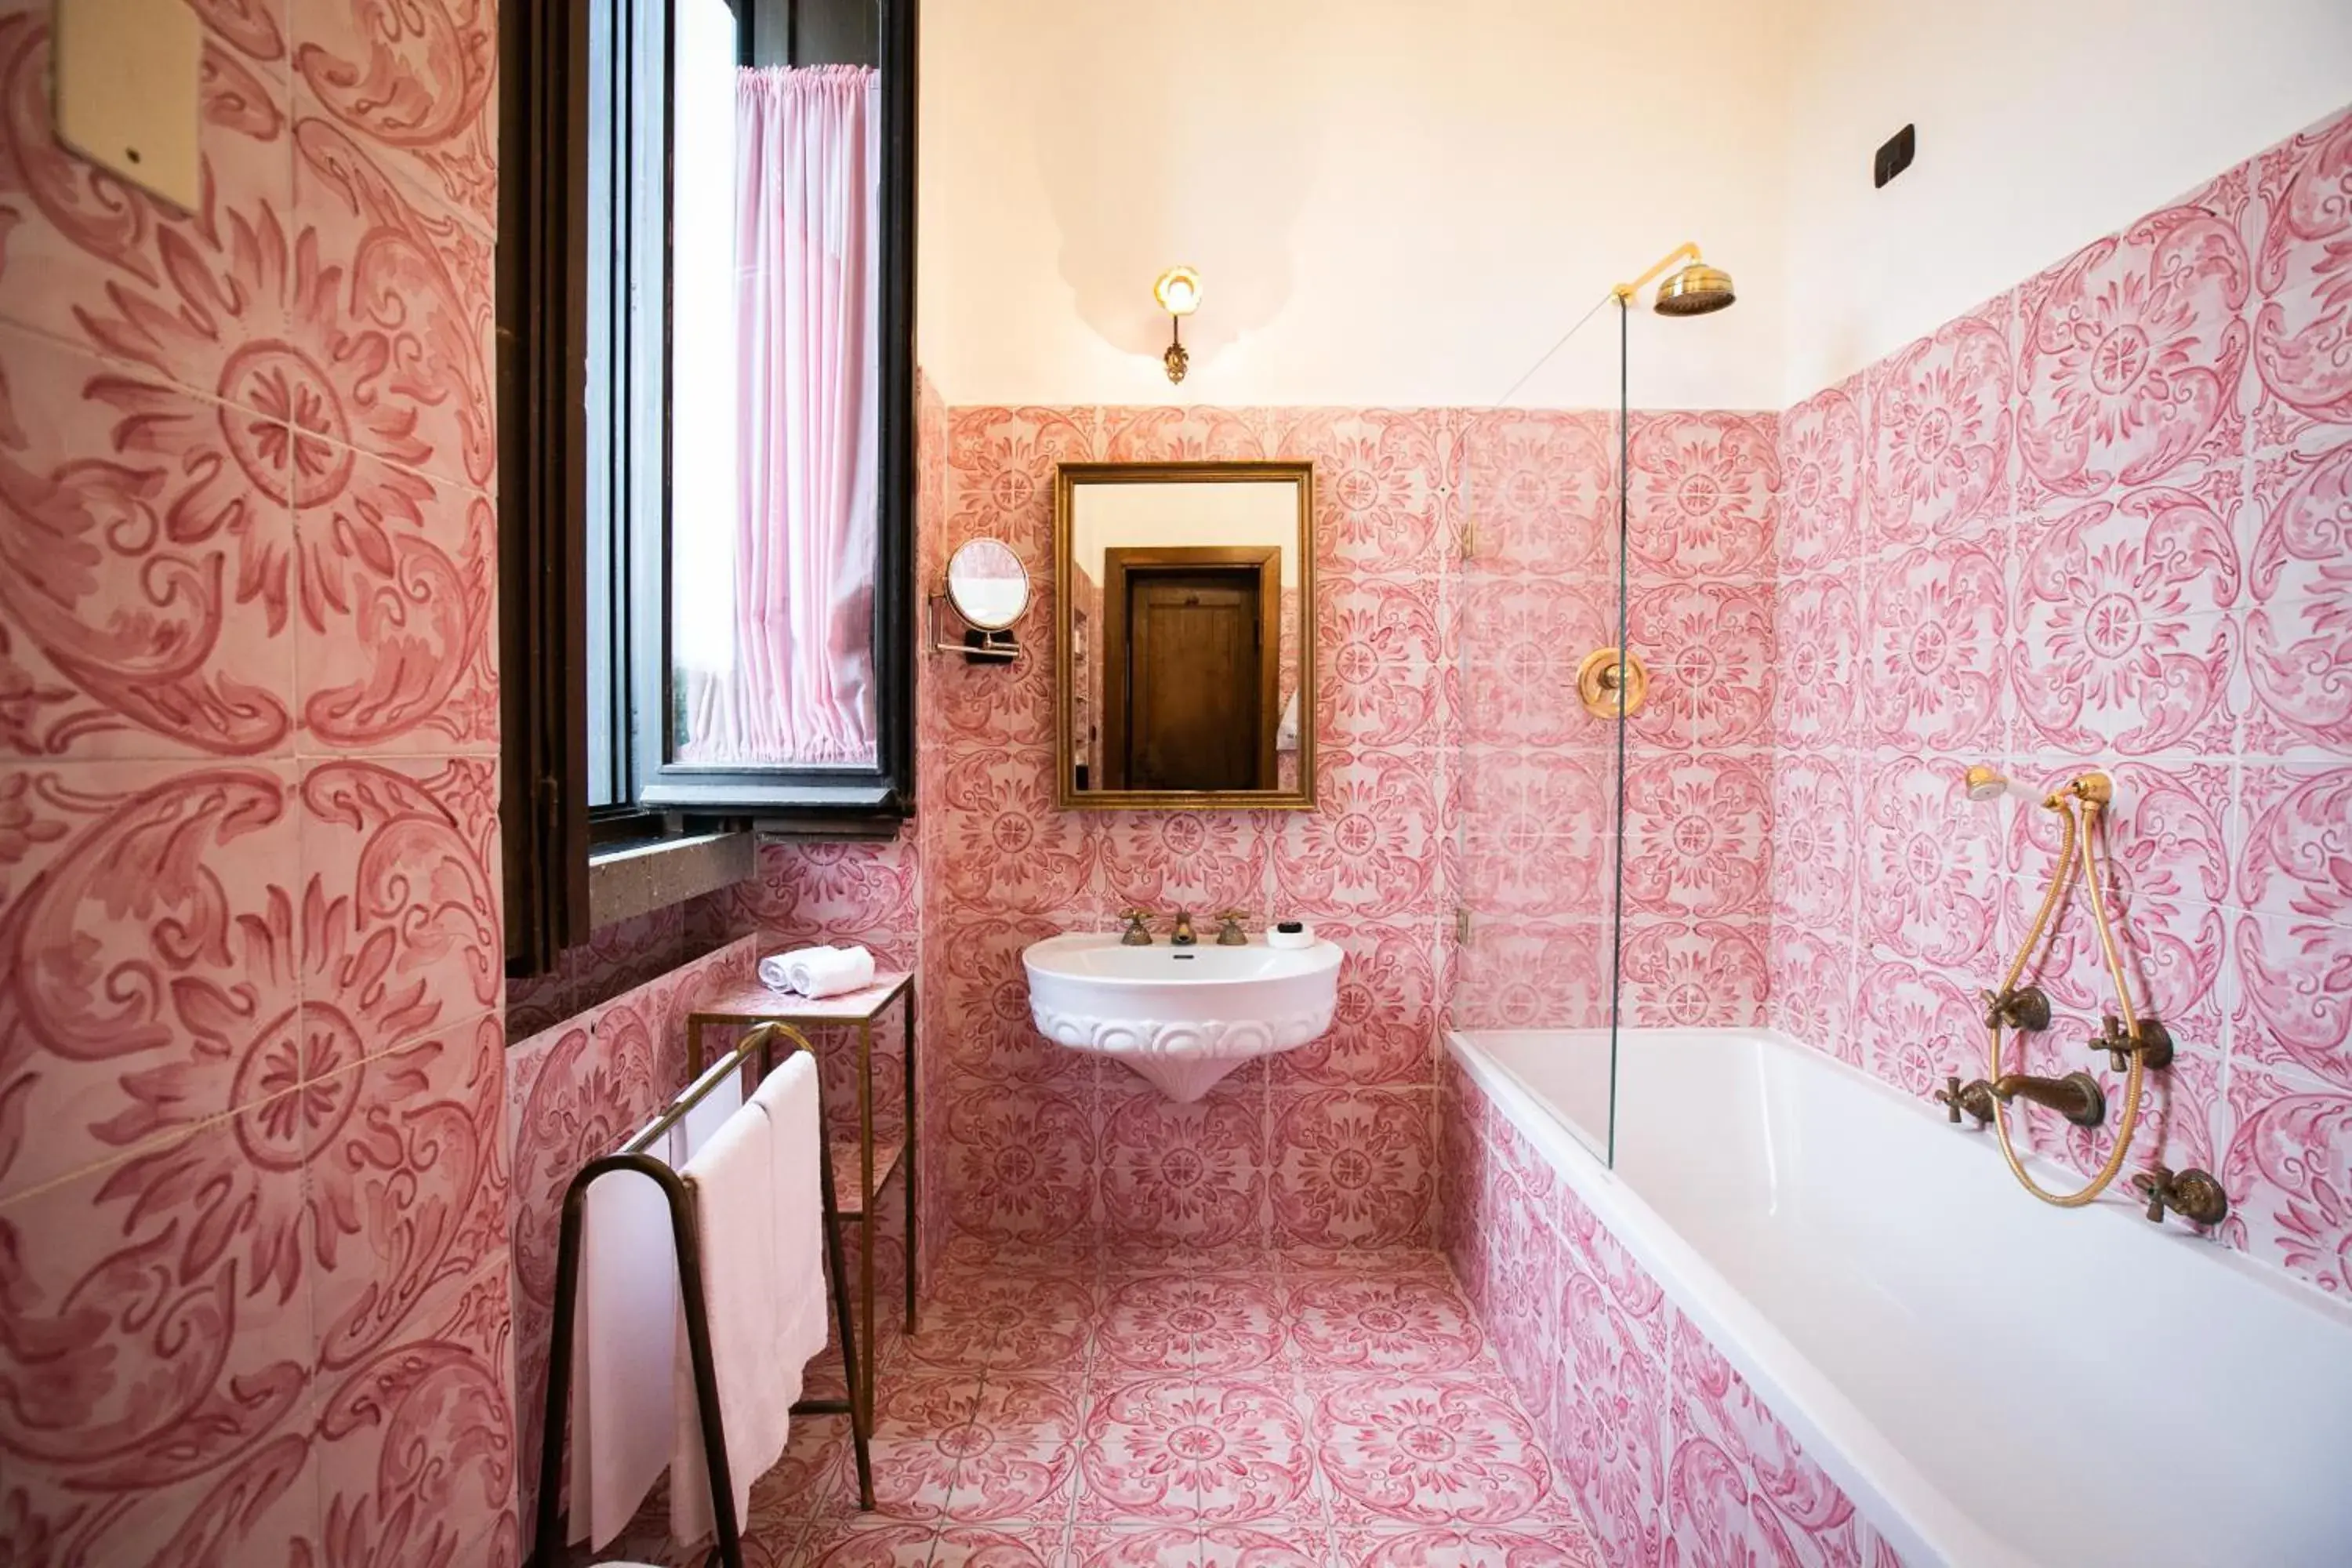 Bathroom in La Posta Vecchia Hotel